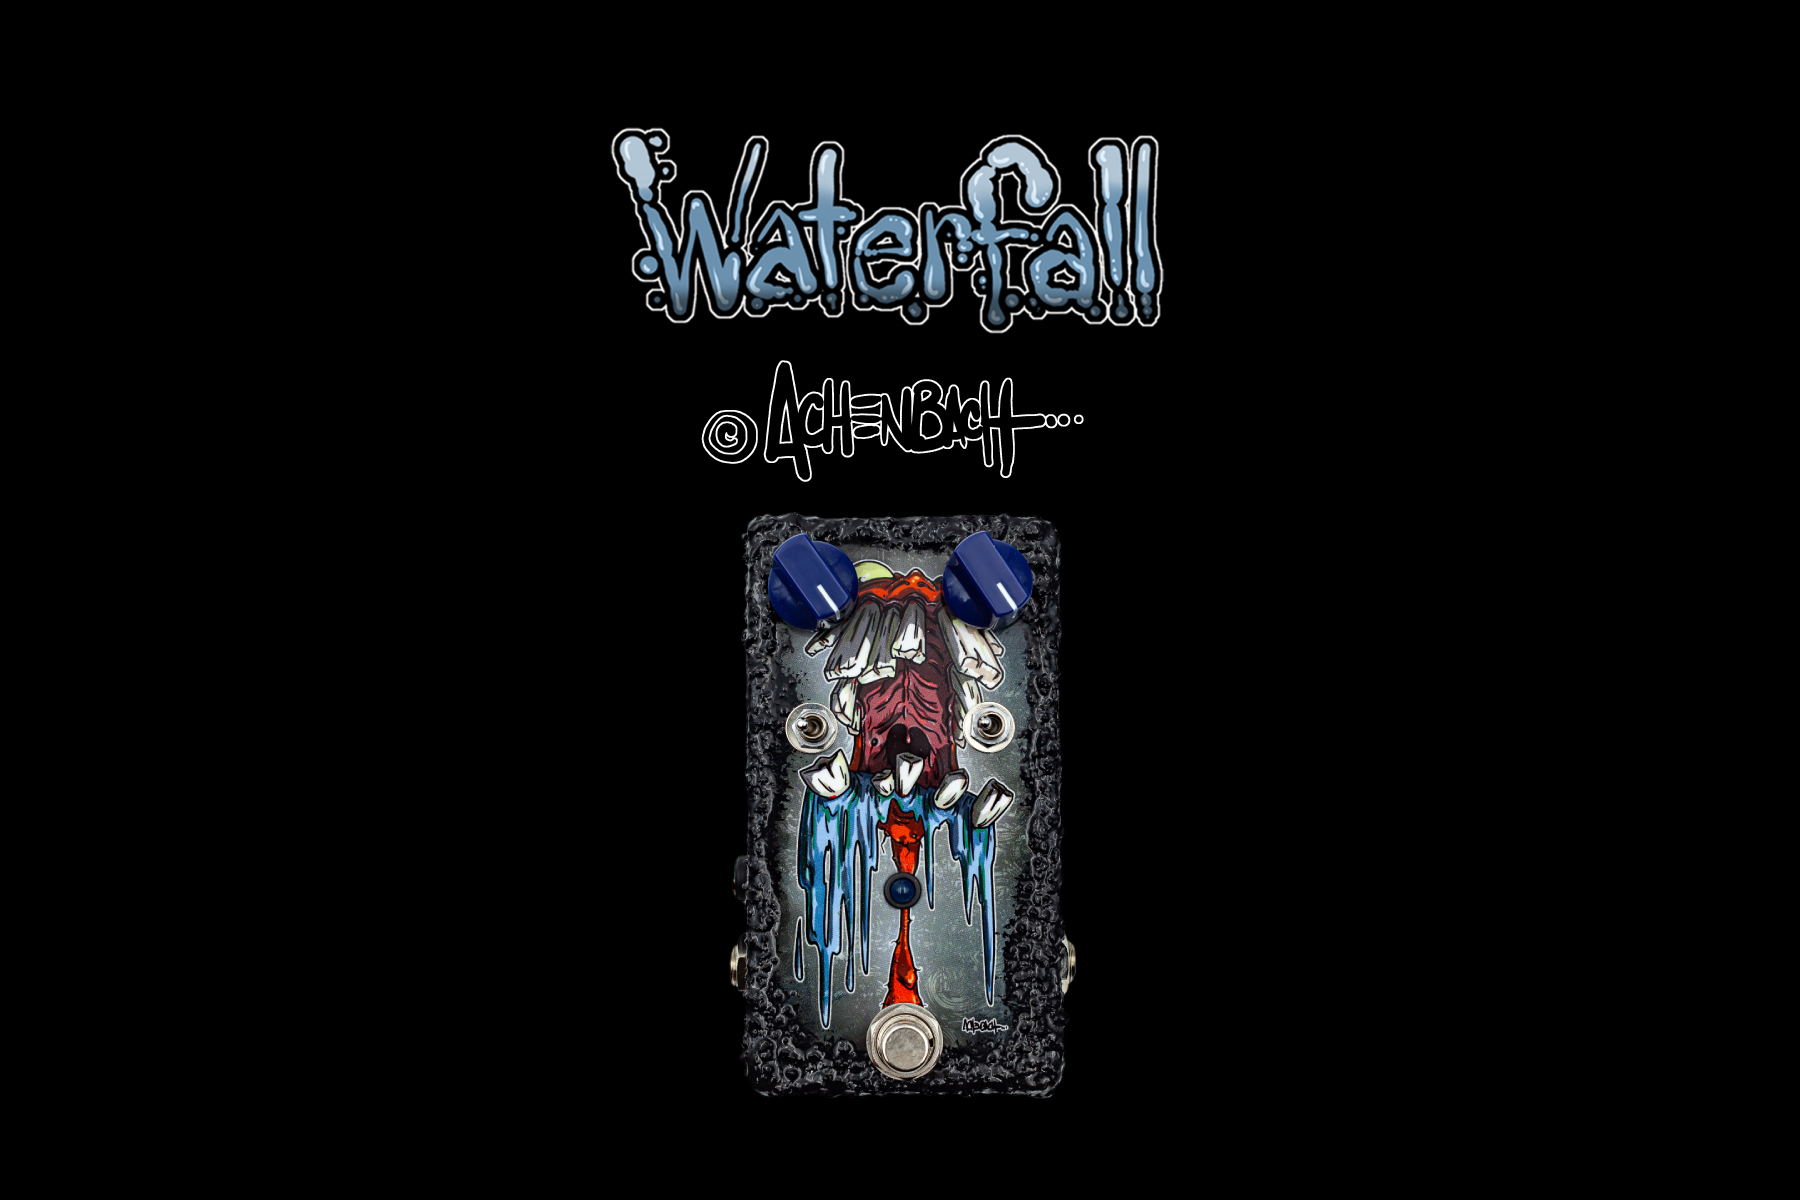 “Achenbach” WaterFall